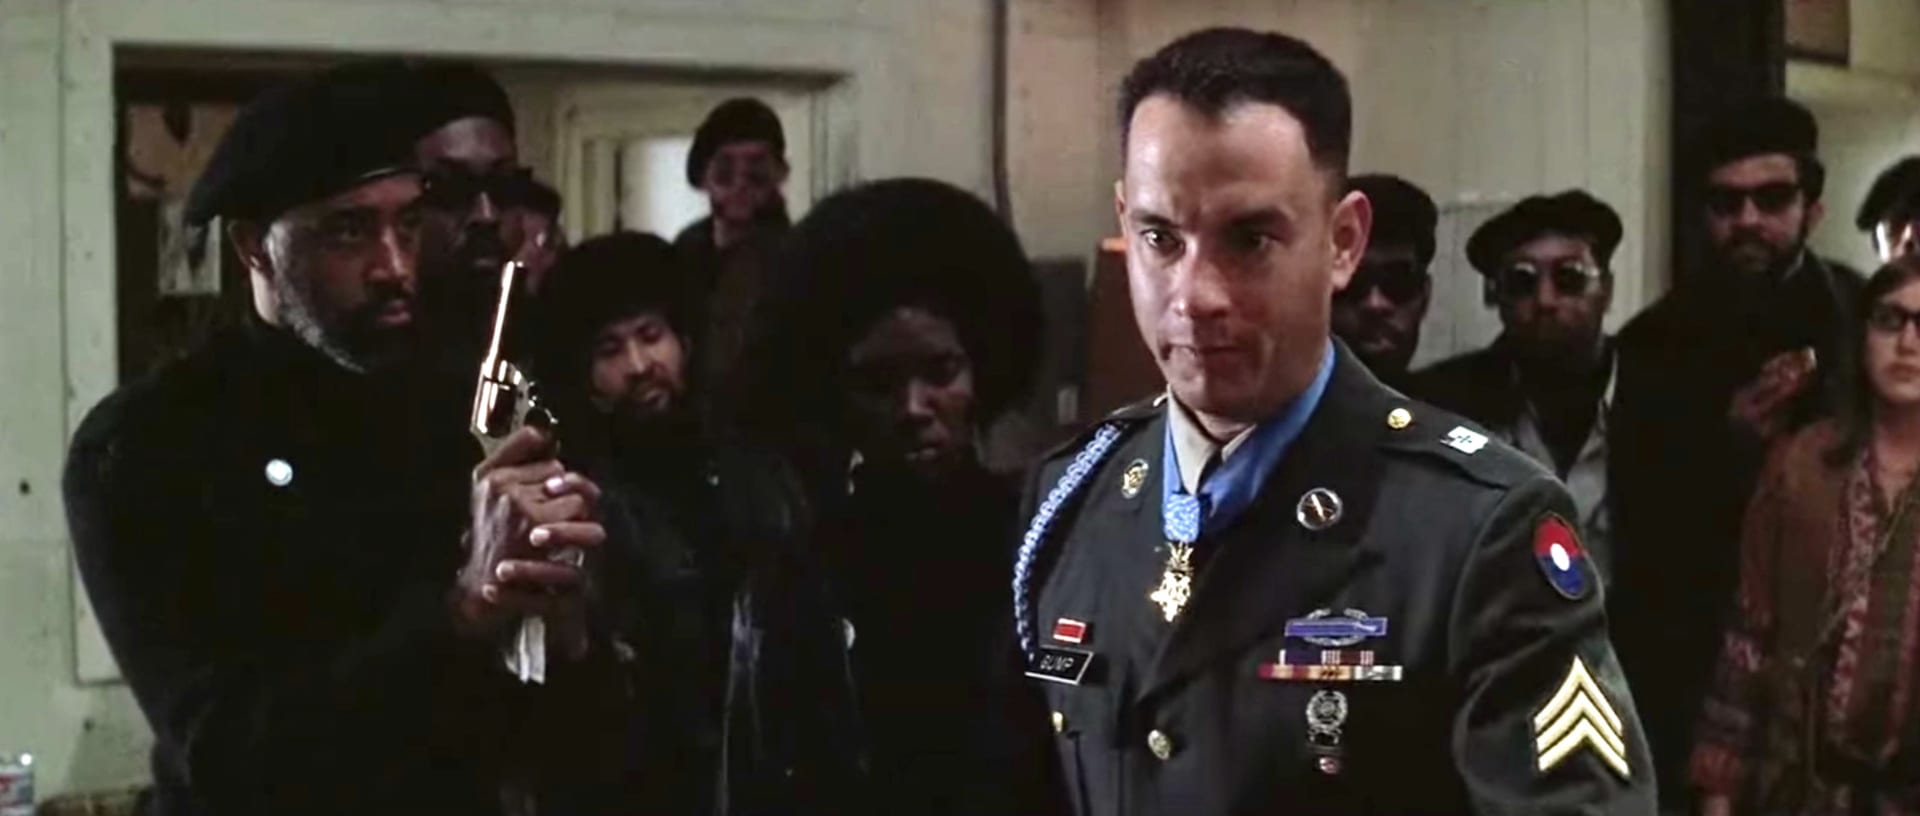 Ve filmové klasice Forrest Gump se mihnul jako jeden z členů organizace Černí panteři.